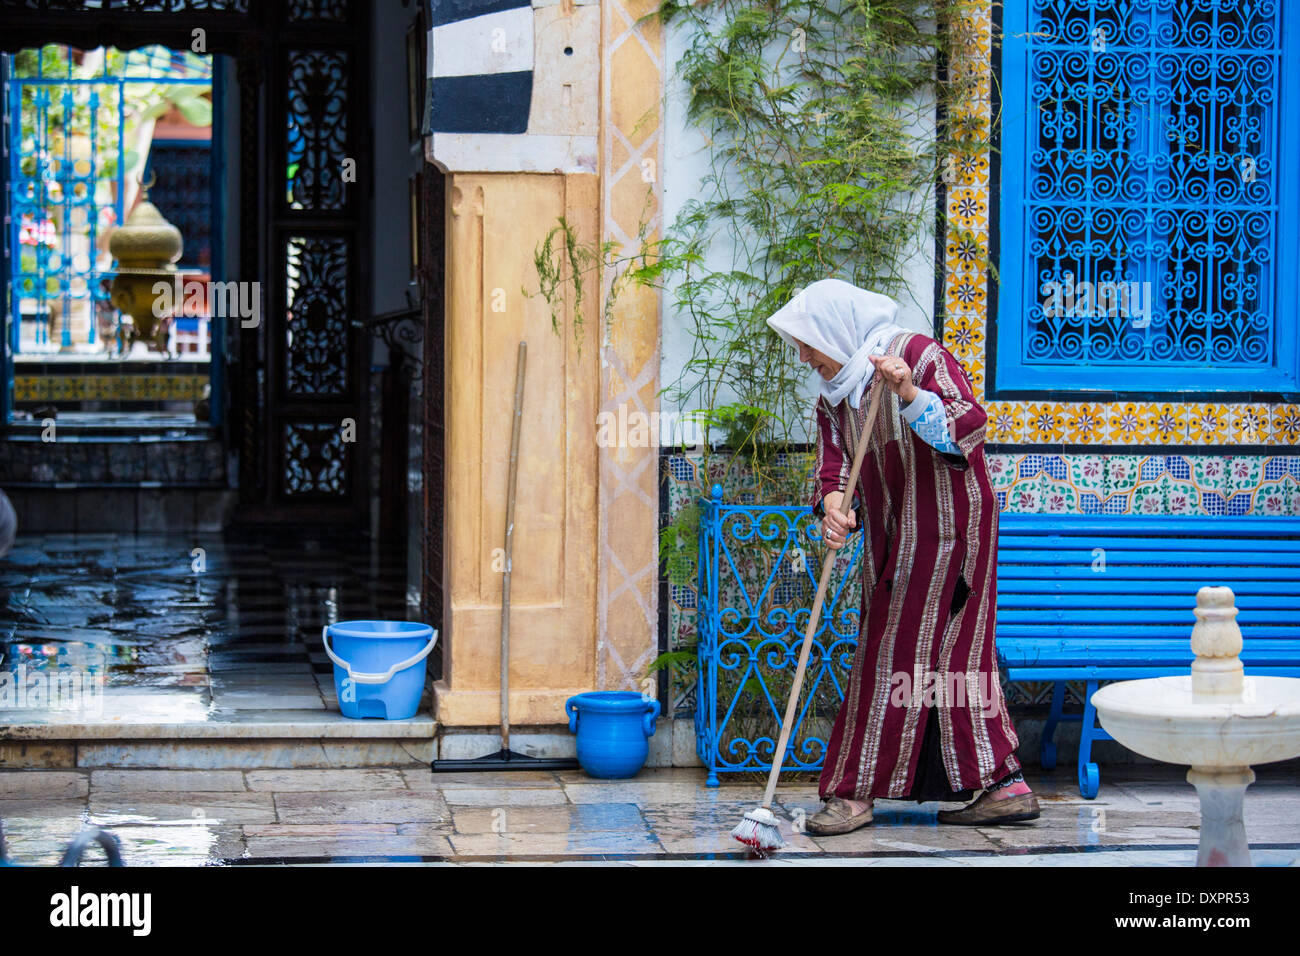 Woman sweeping a floor in Sidi Bou Said, Tunisia Stock Photo